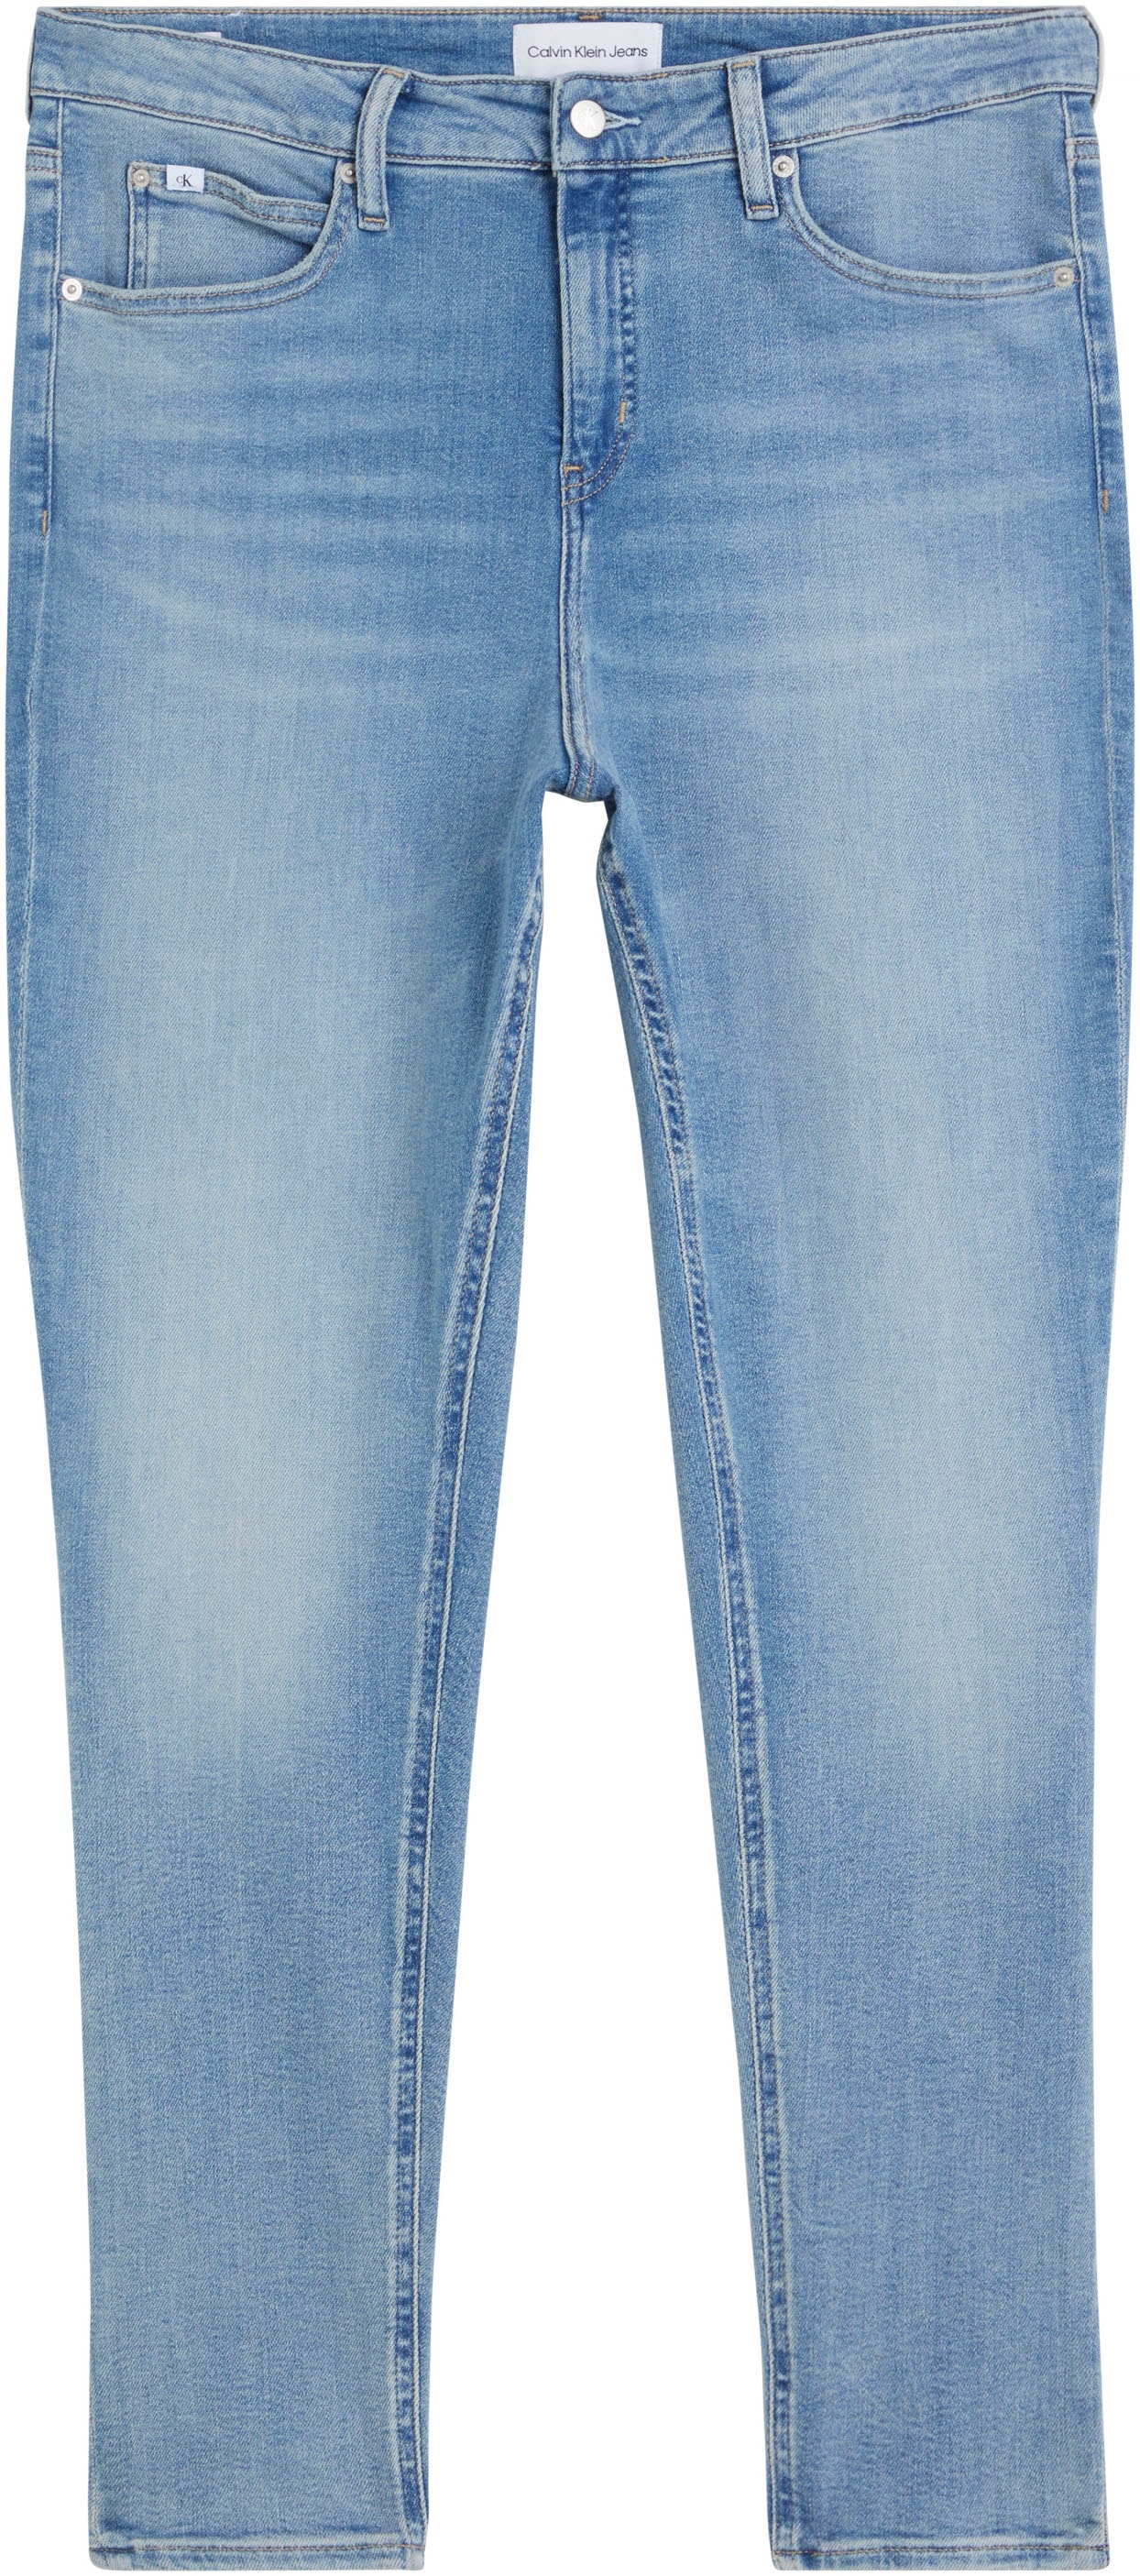 Damen Jeans große kaufen jetzt Größen online